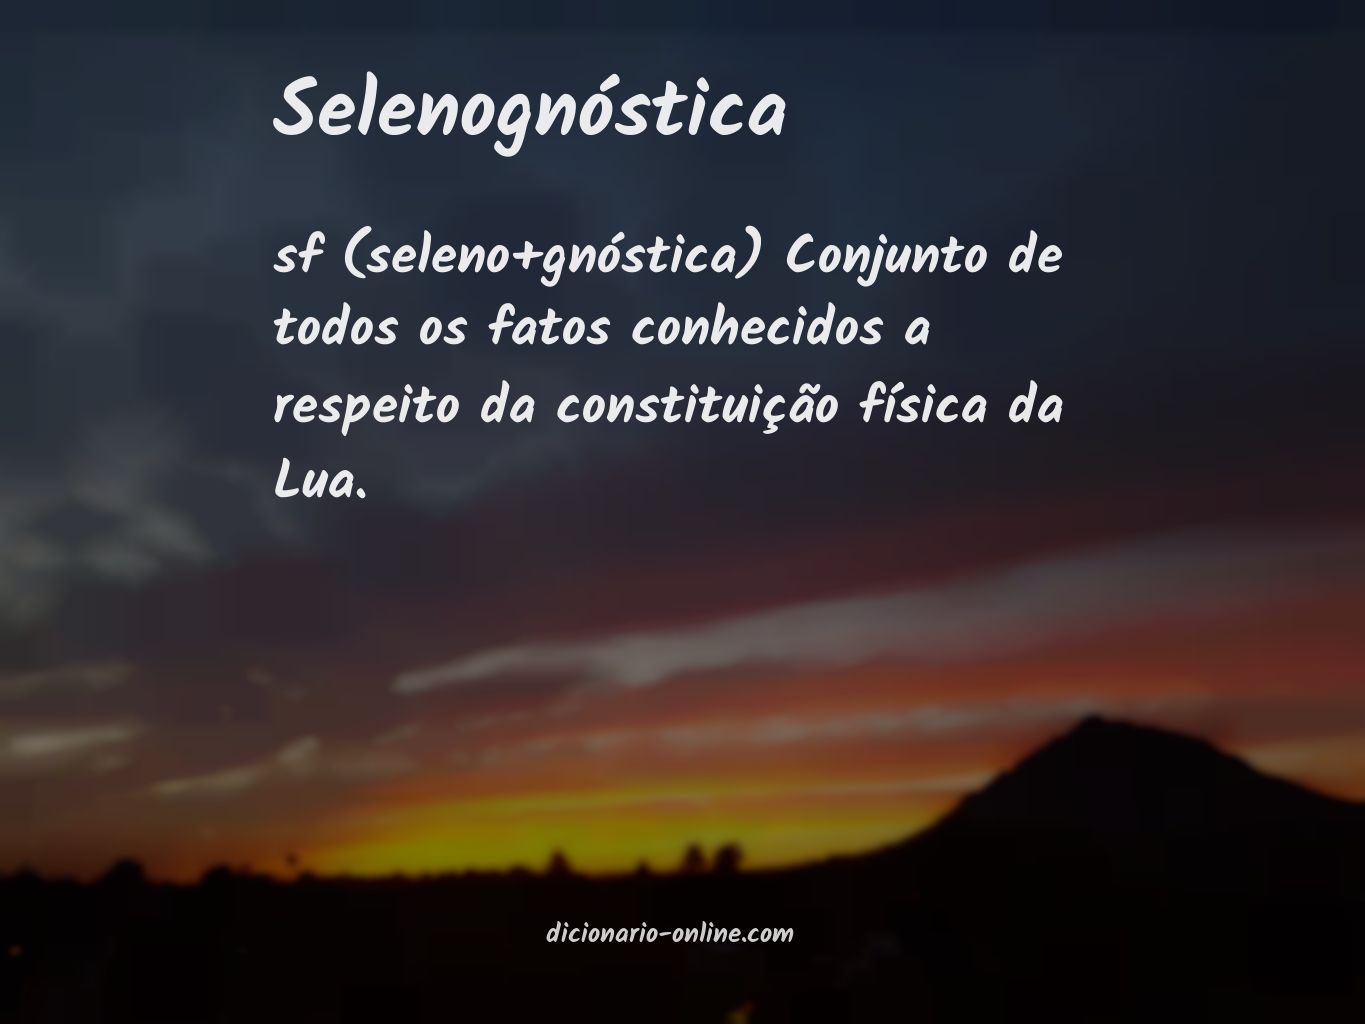 Significado de selenognóstica